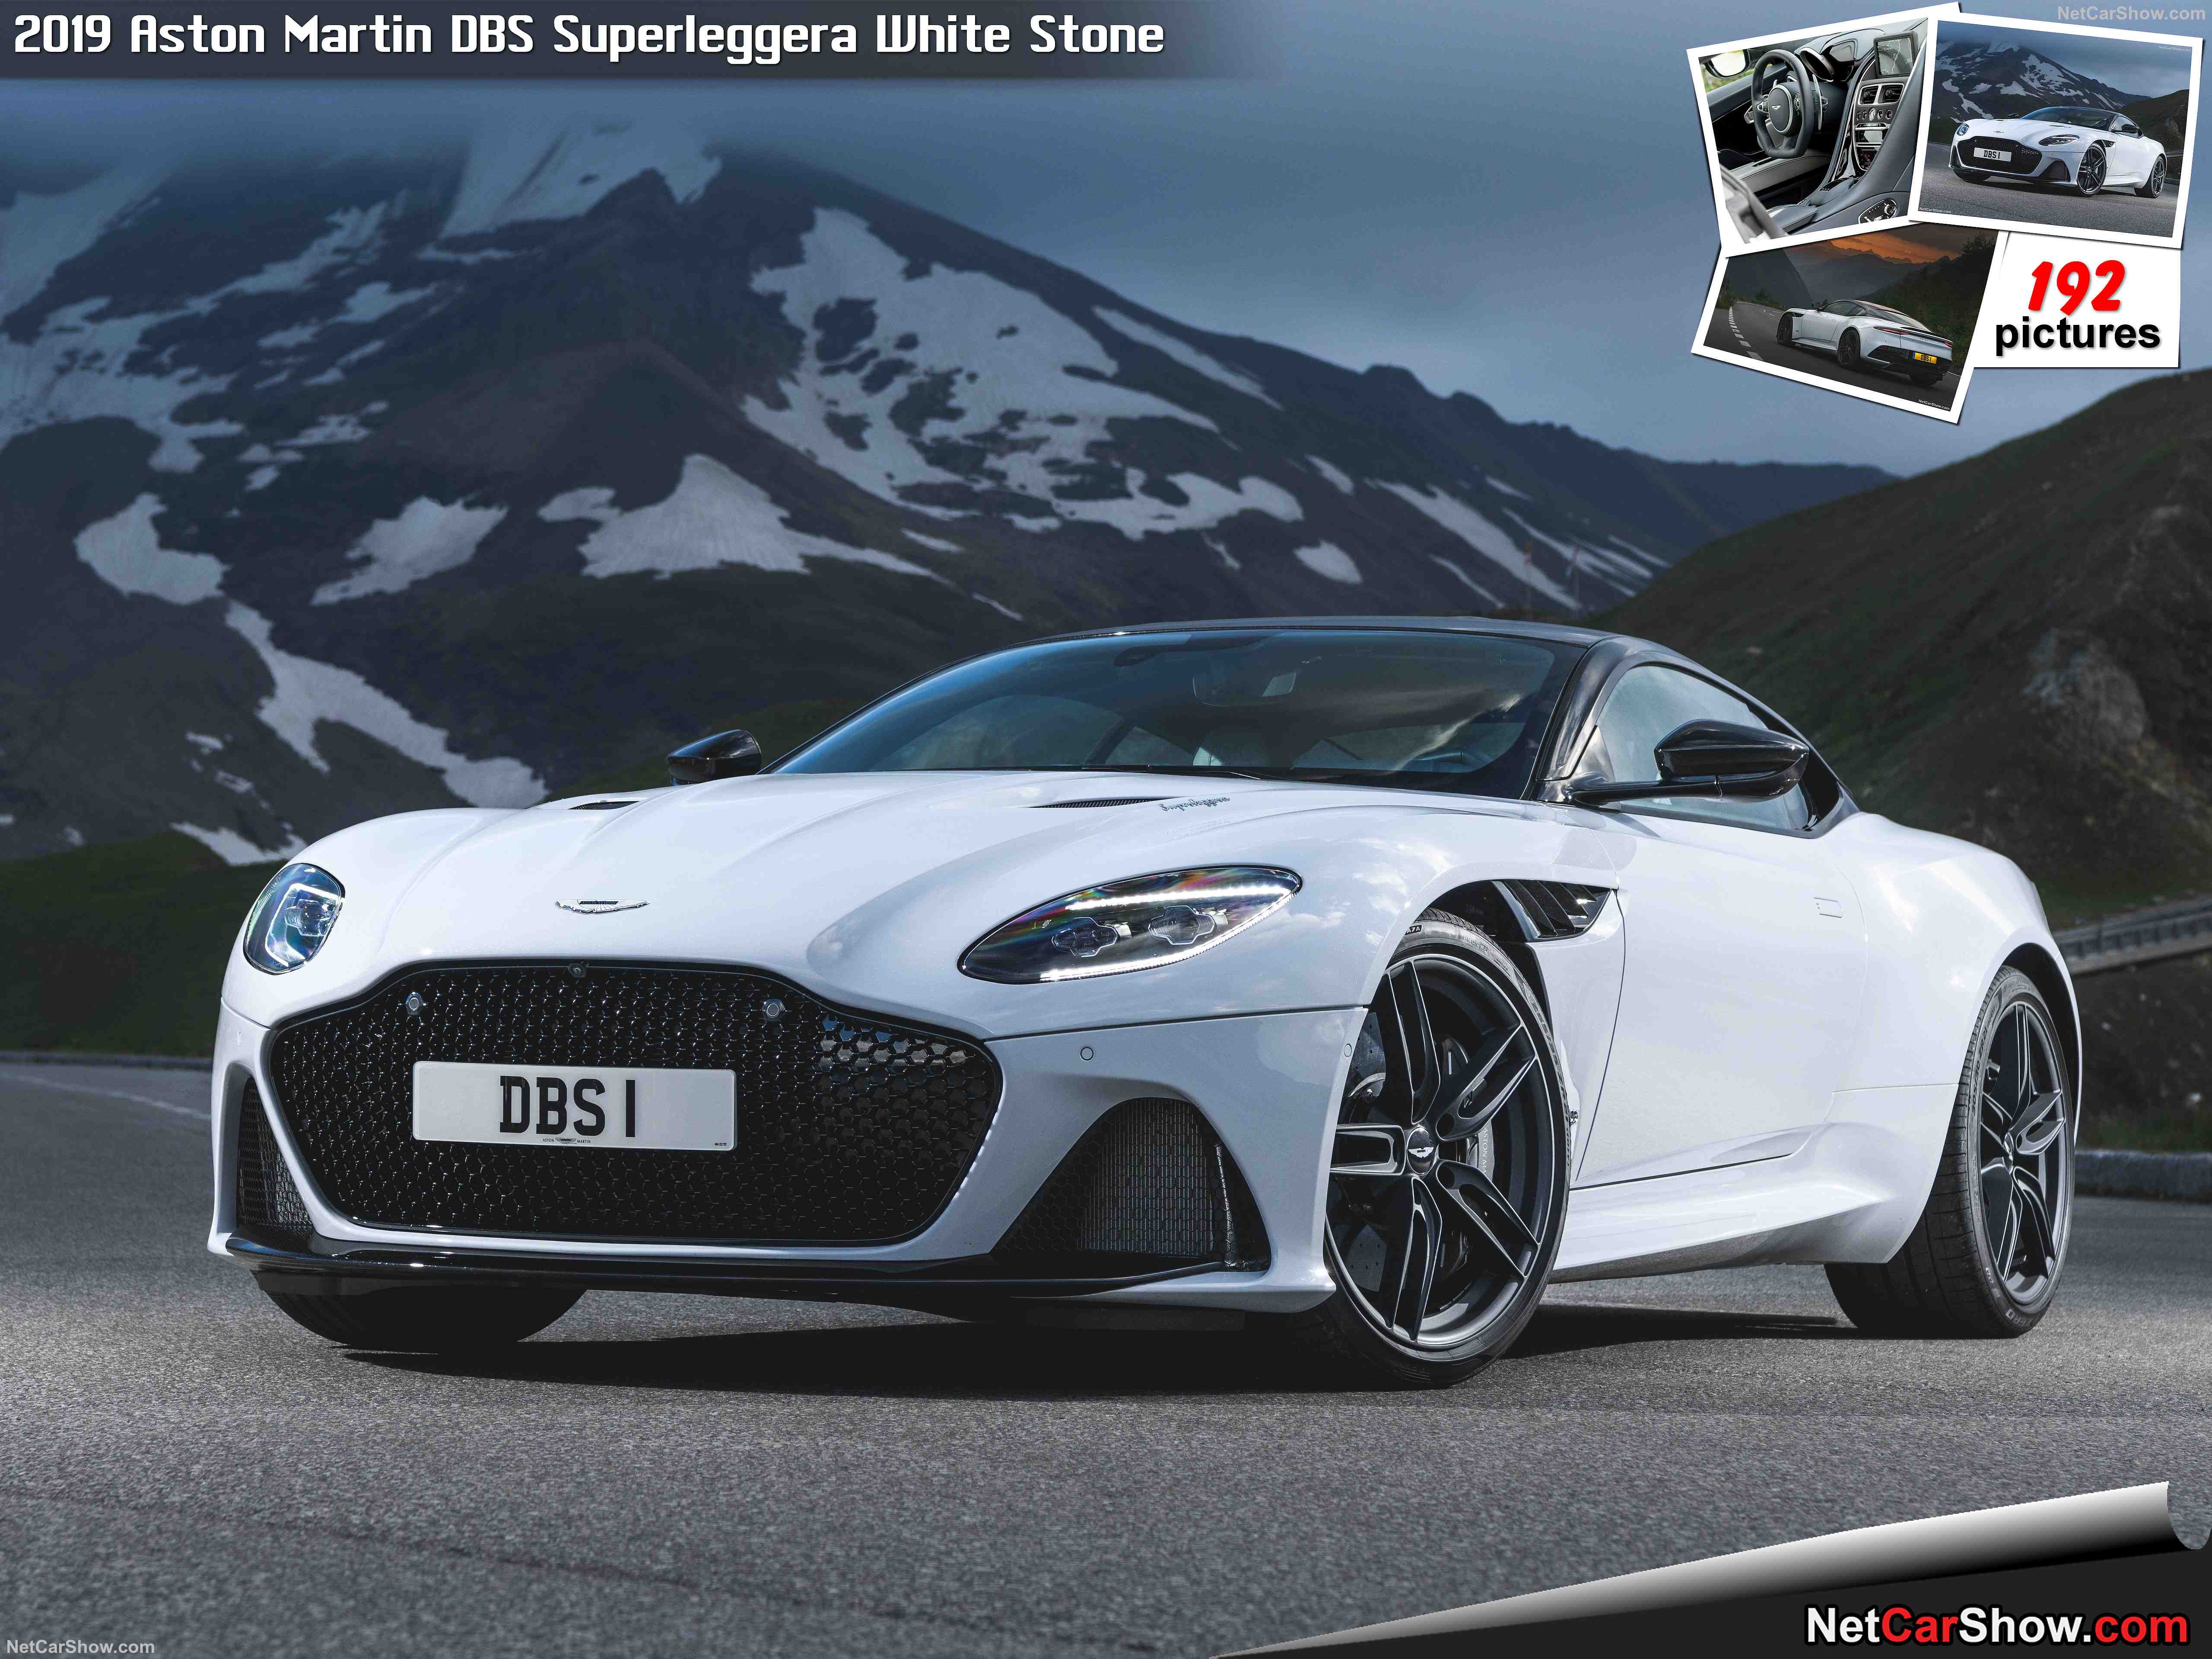 Aston Martin DBS Superleggera 4k specifications